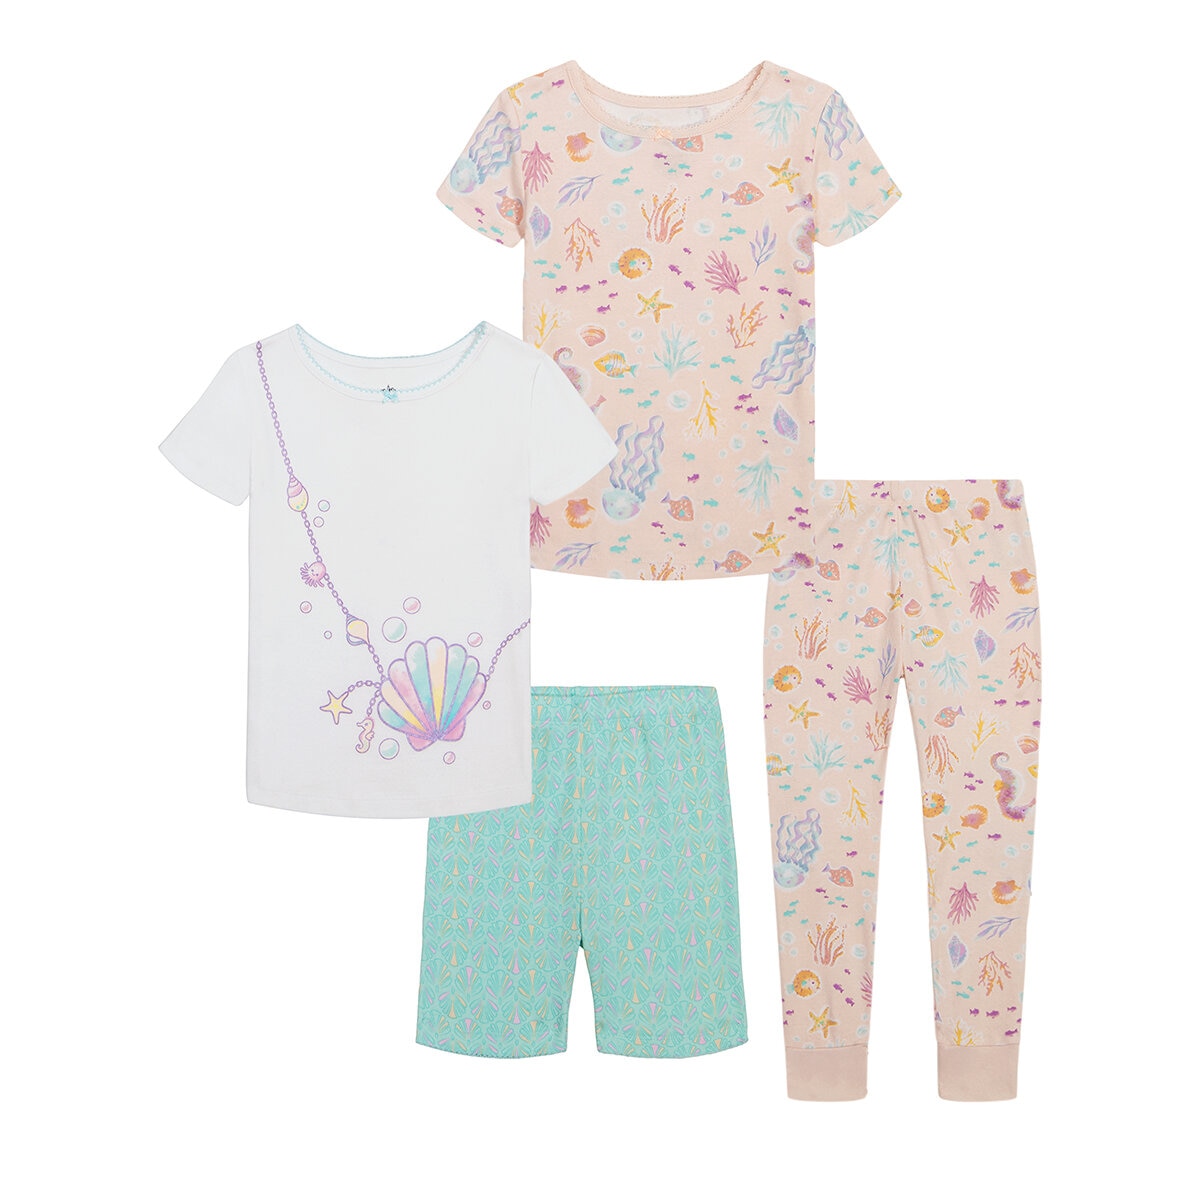 Kids Headquarters Pijama 4 piezas para Niños o Niñas Varias Tallas y Colores